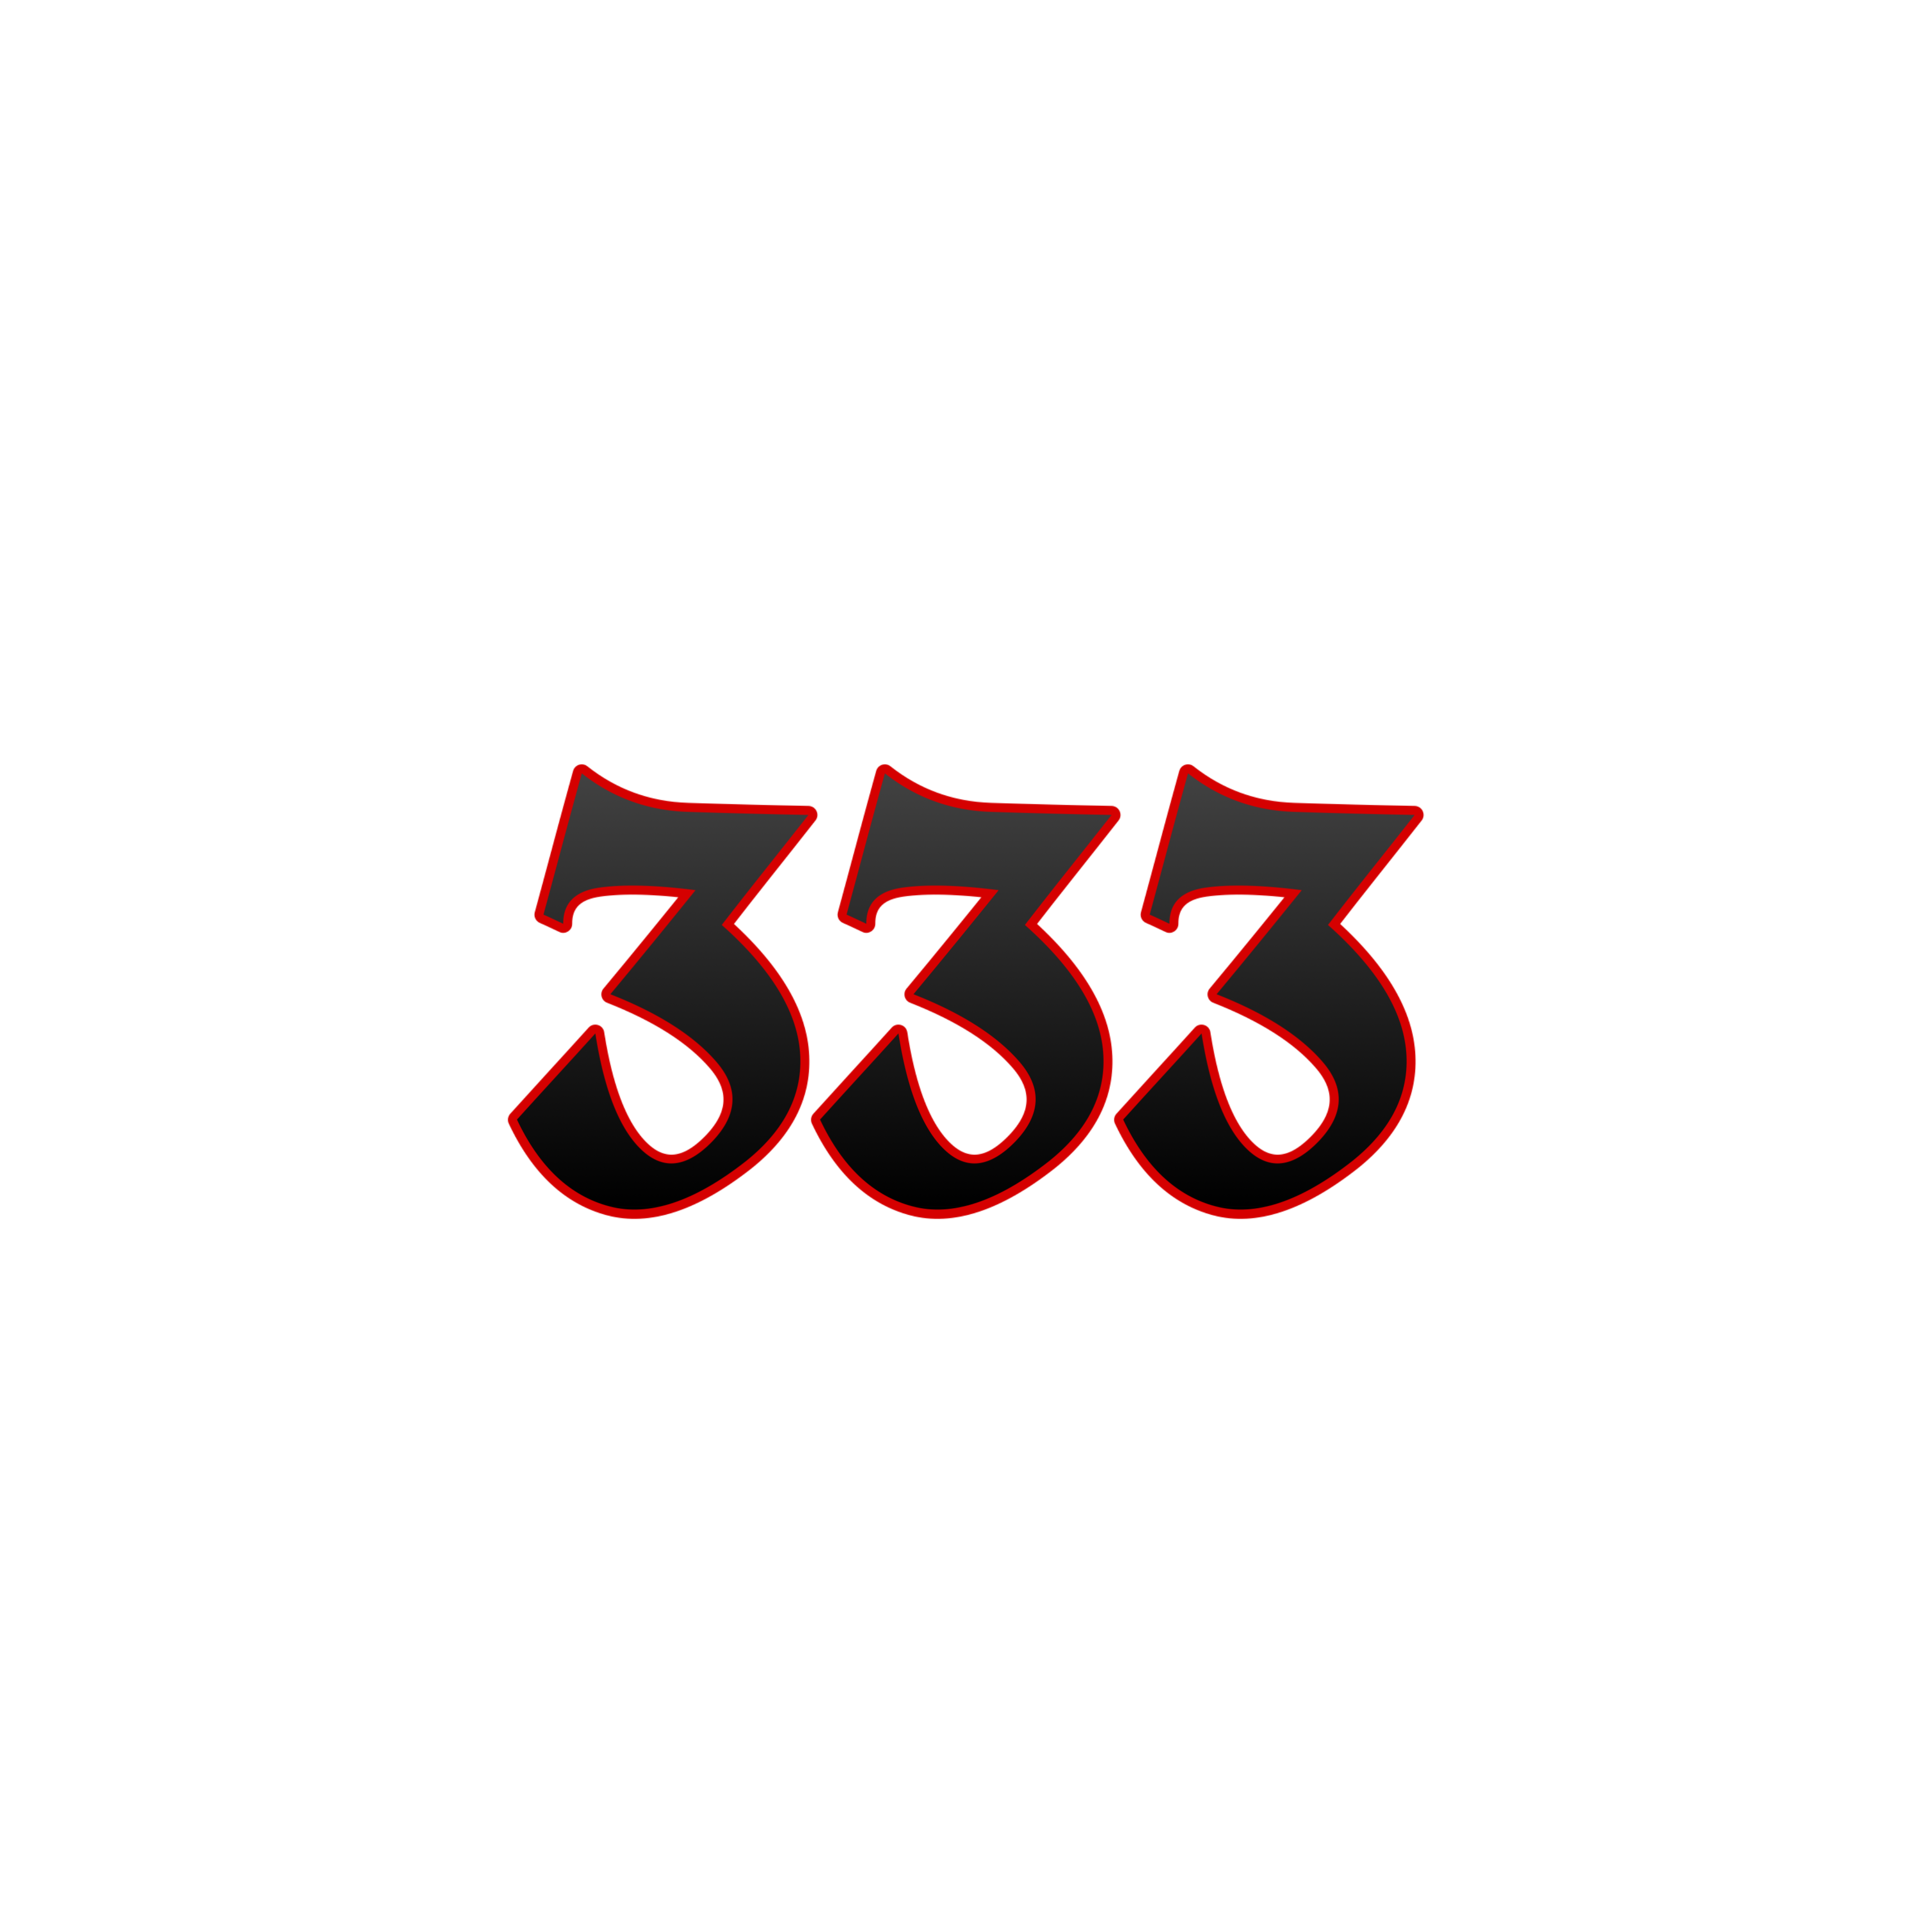 333 goth freetoedit #333 #goth sticker by @dxrkmxndz